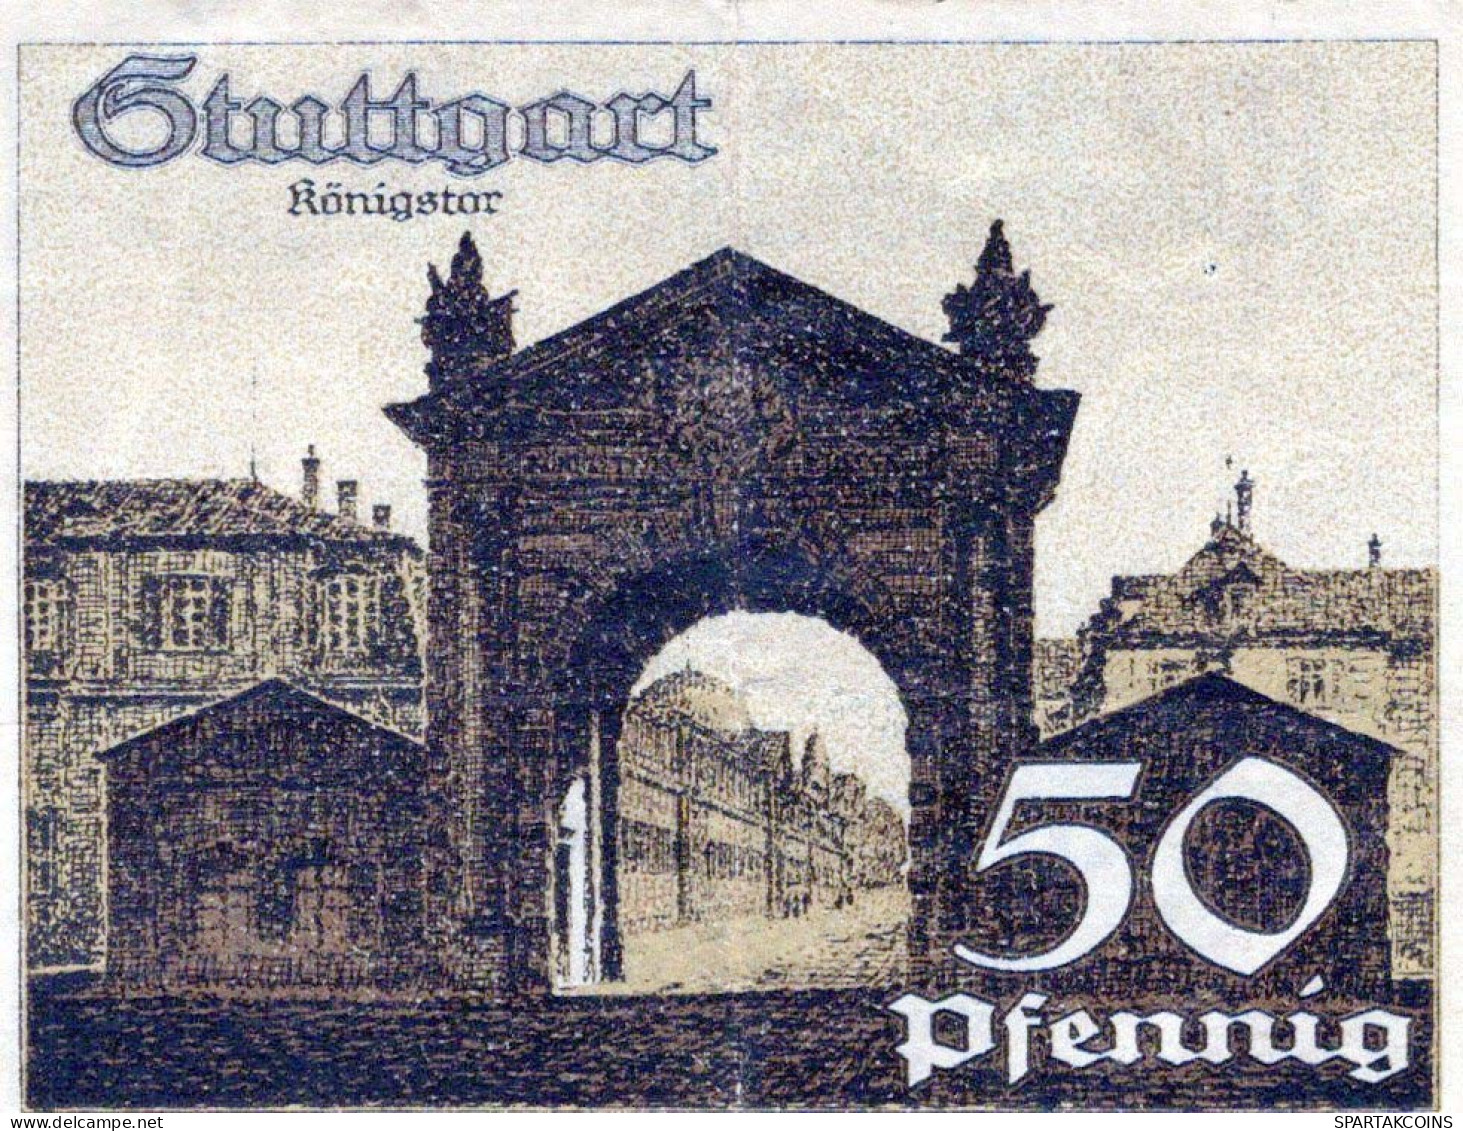 50 PFENNIG 1921 Stadt STUTTGART Württemberg UNC DEUTSCHLAND Notgeld #PC435 - Lokale Ausgaben